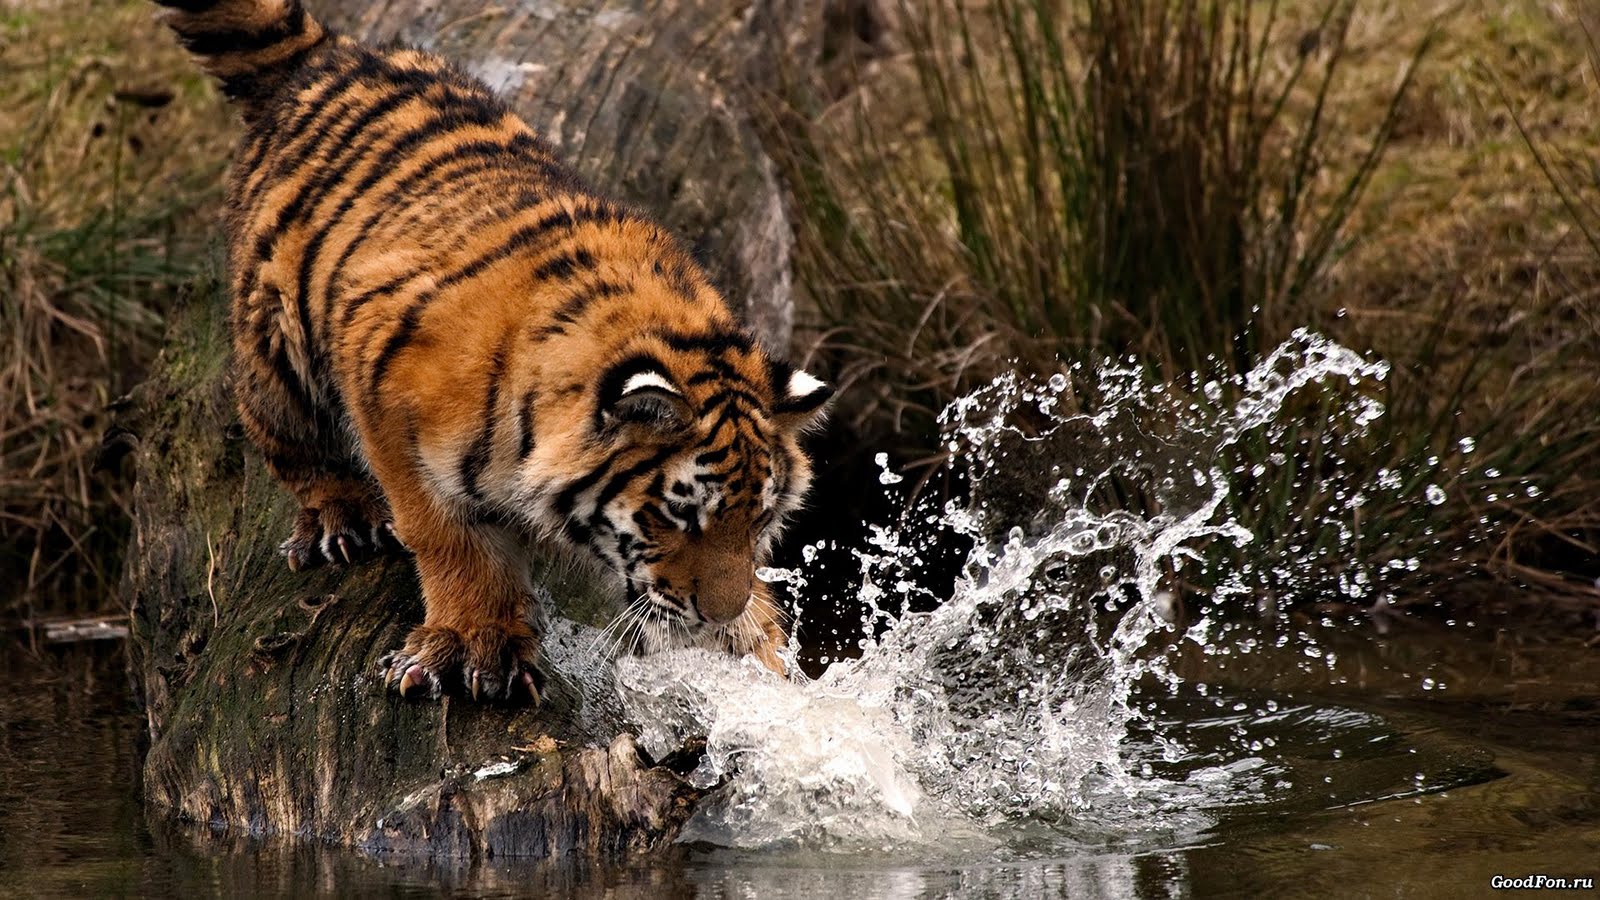 HD Tiger Wallpaper Pics Image